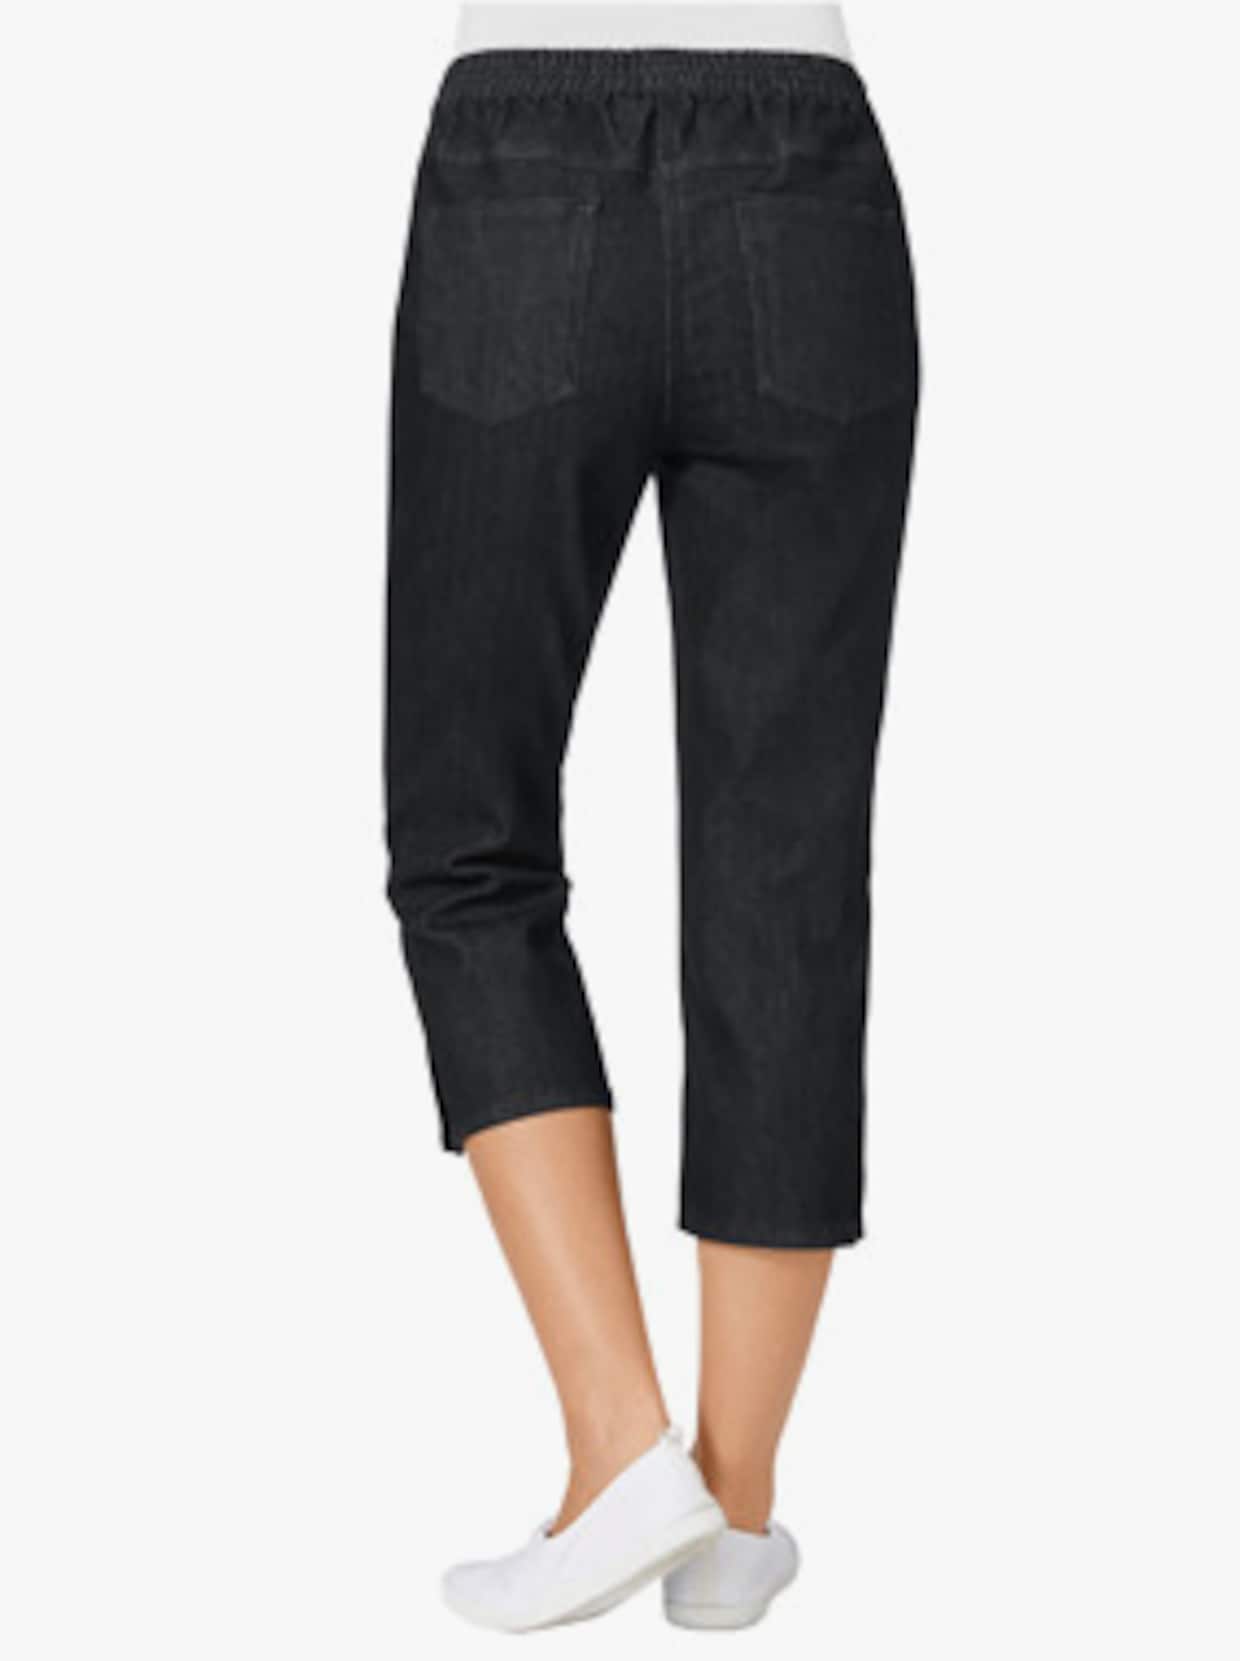 Capri-jeans - black denim